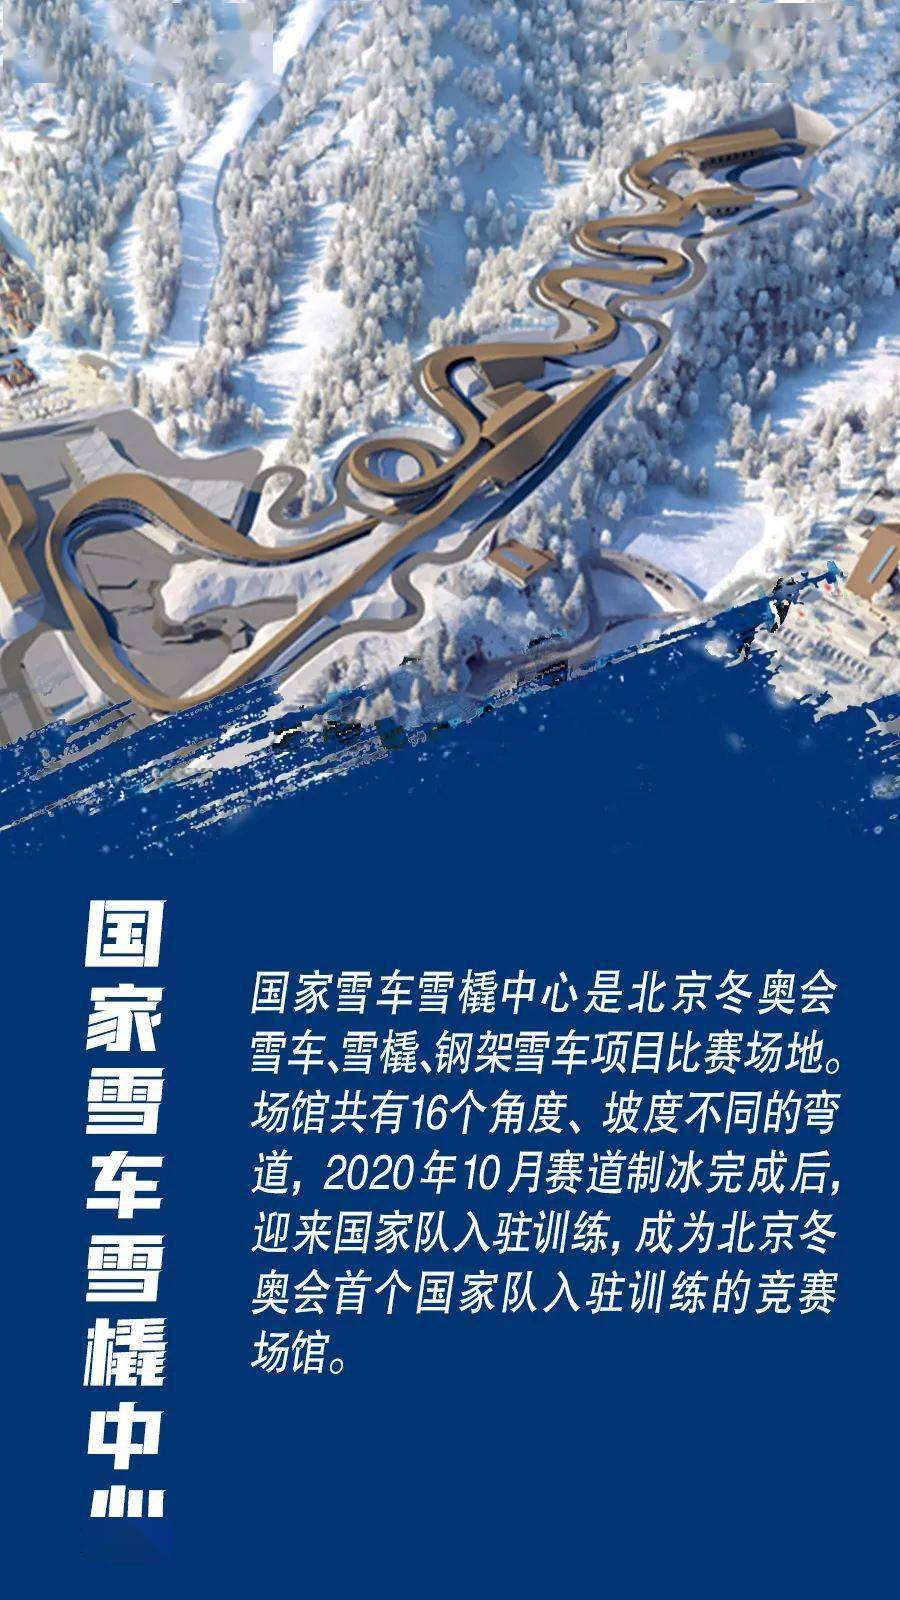 
北京2022米乐年冬奥会计划使用25个场馆分布3个赛区